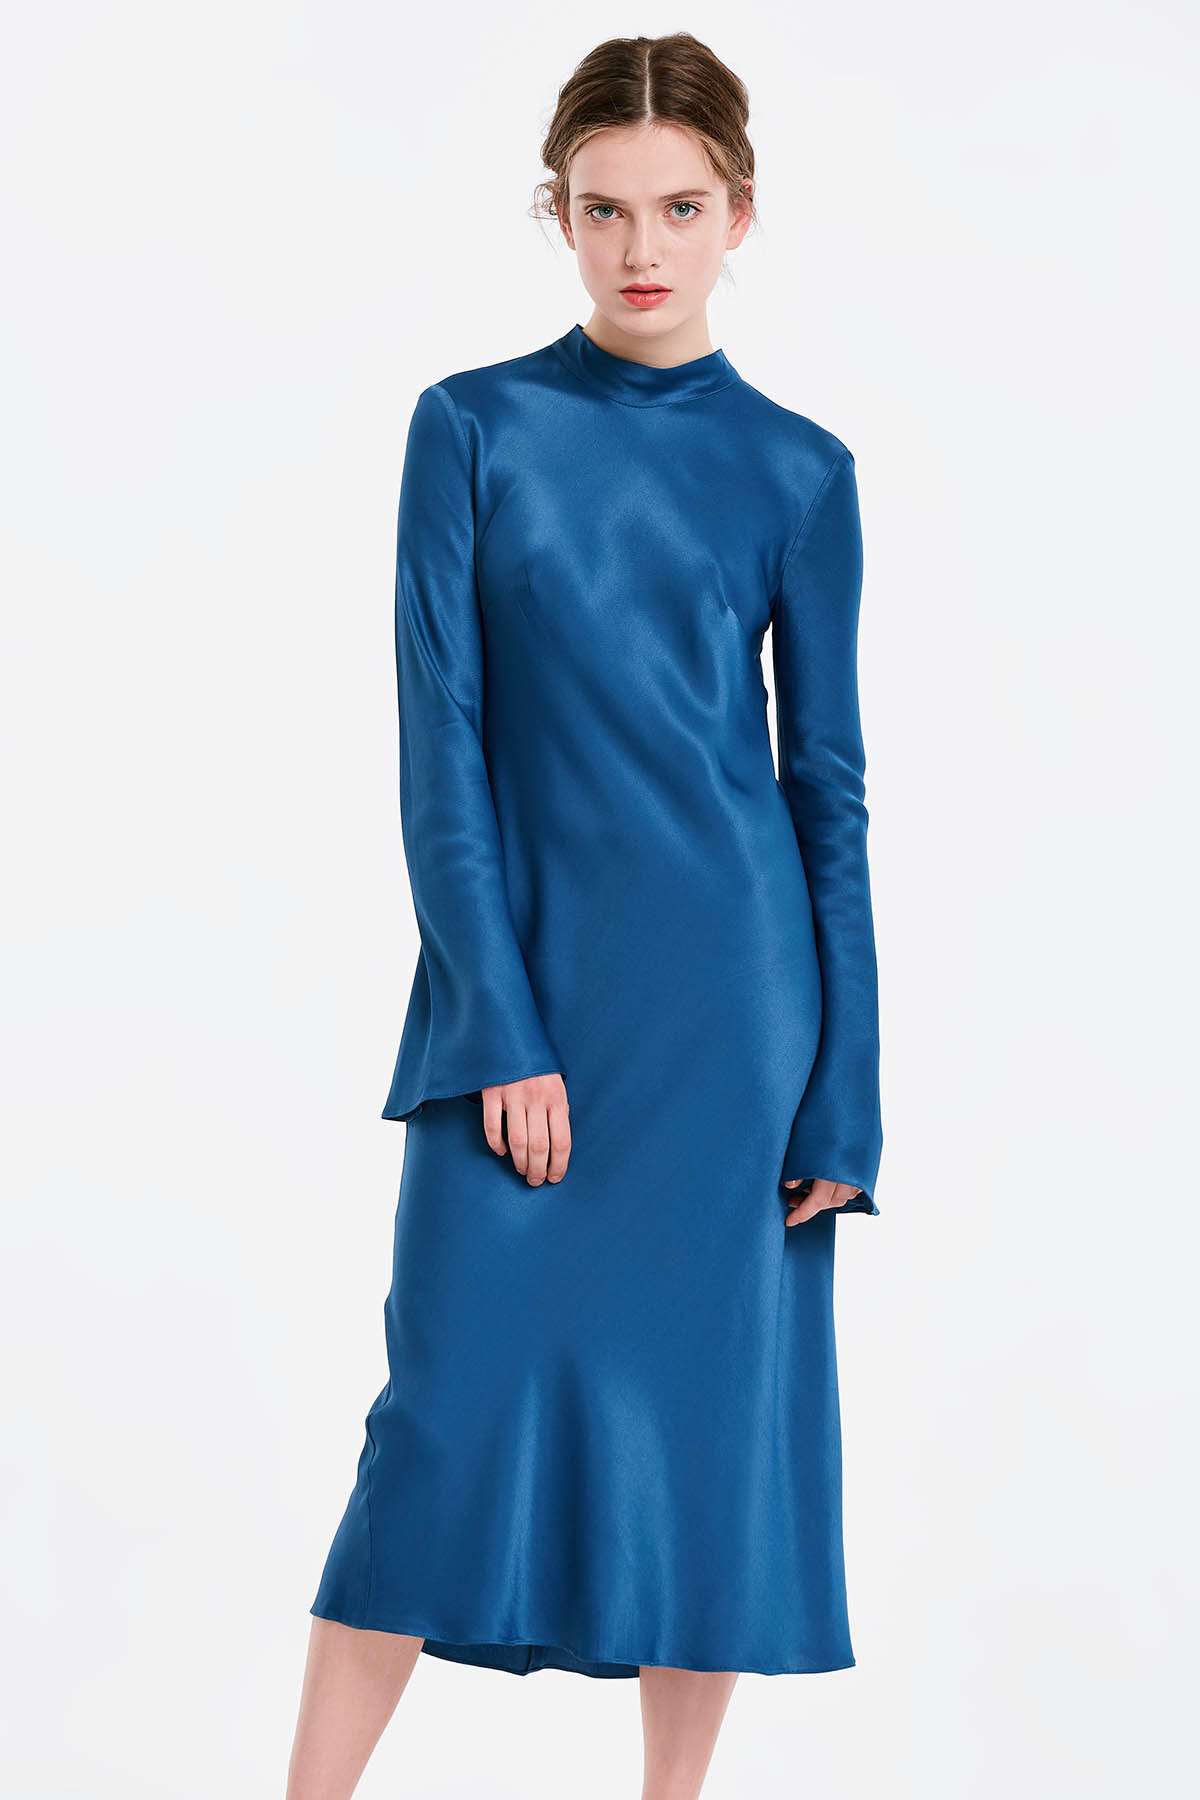 Синя сукня з бантом на спині, рукав кльош, фото 1